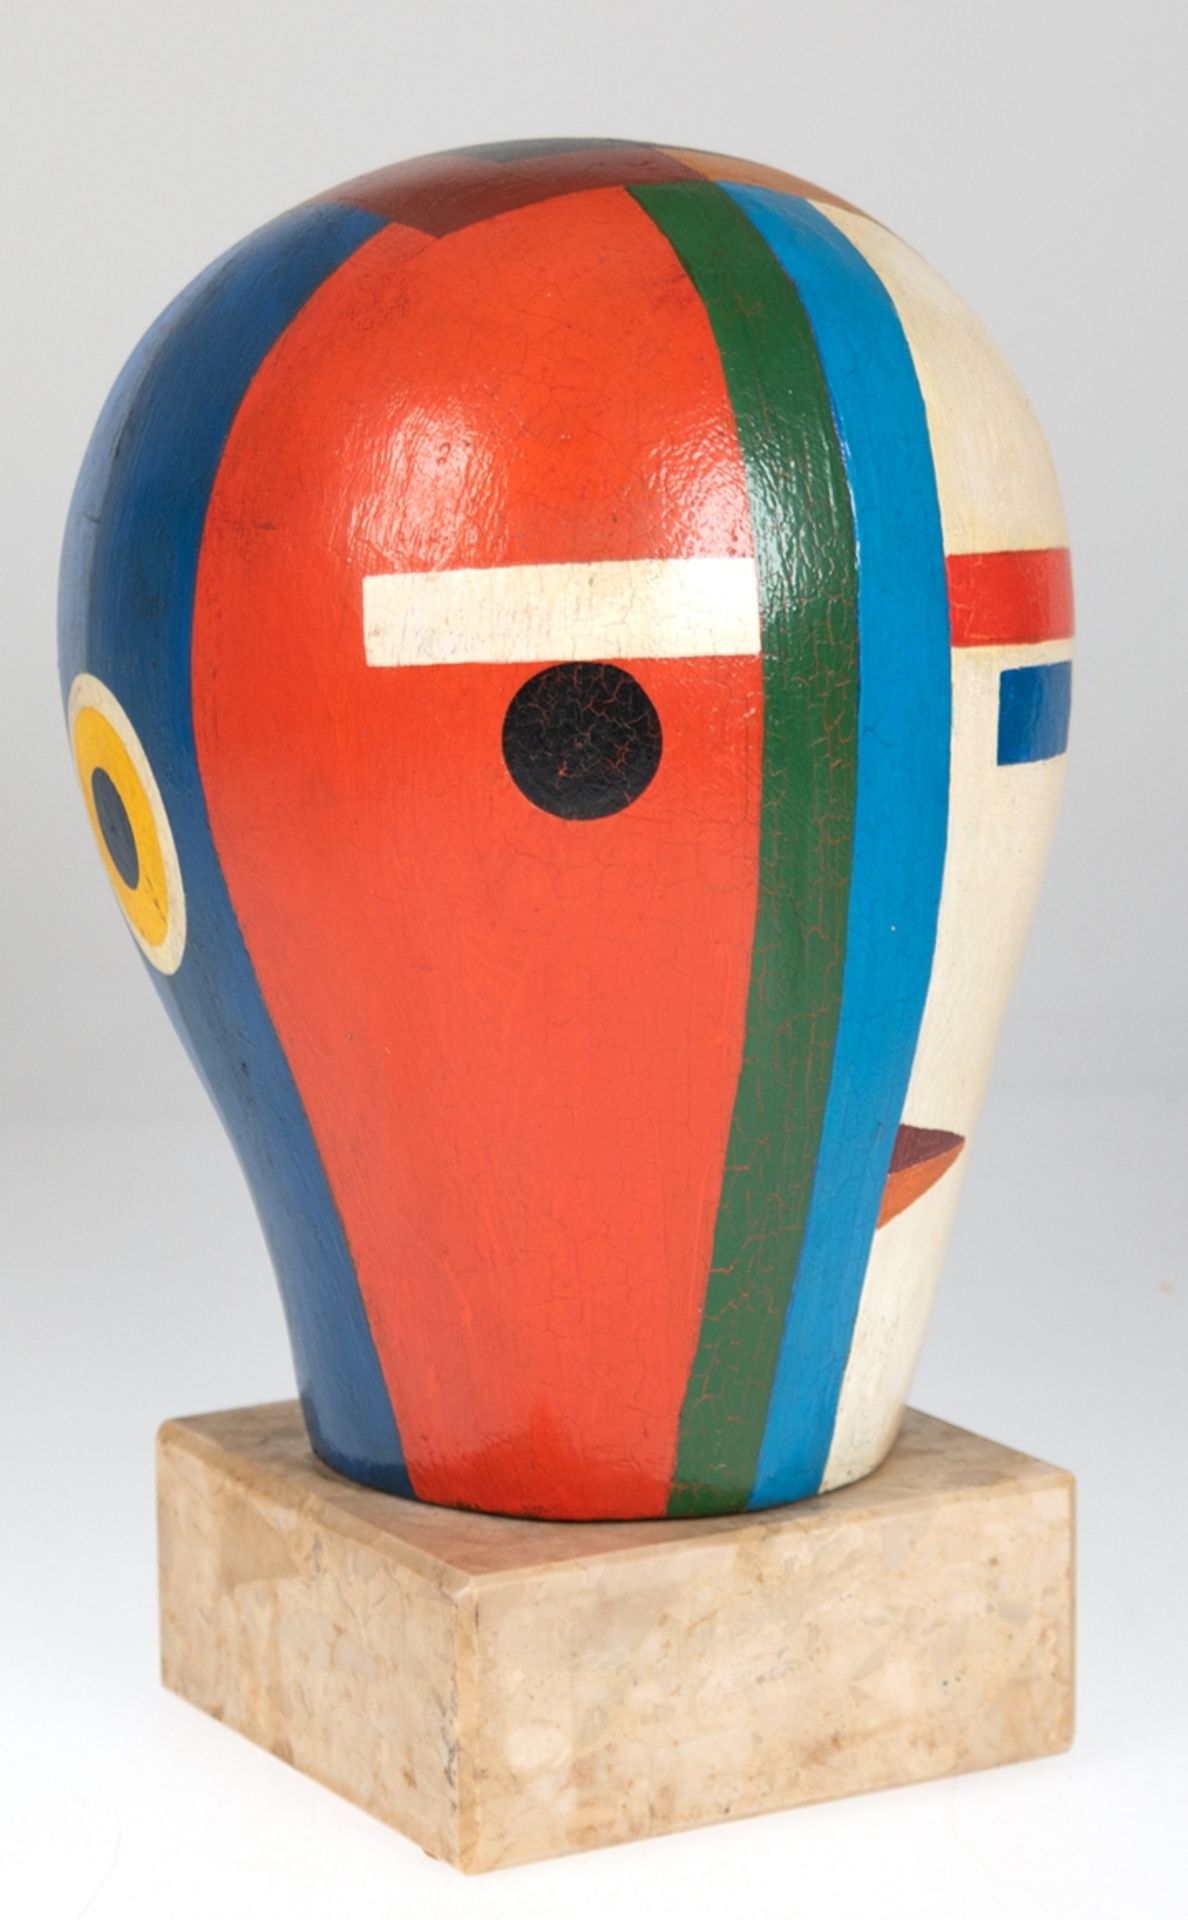 Skulptur "Kopf", Suprematismus, 1950er Jahre, Holz polychrom gefasst, H. 22 cm, auf Marmorsockel, G